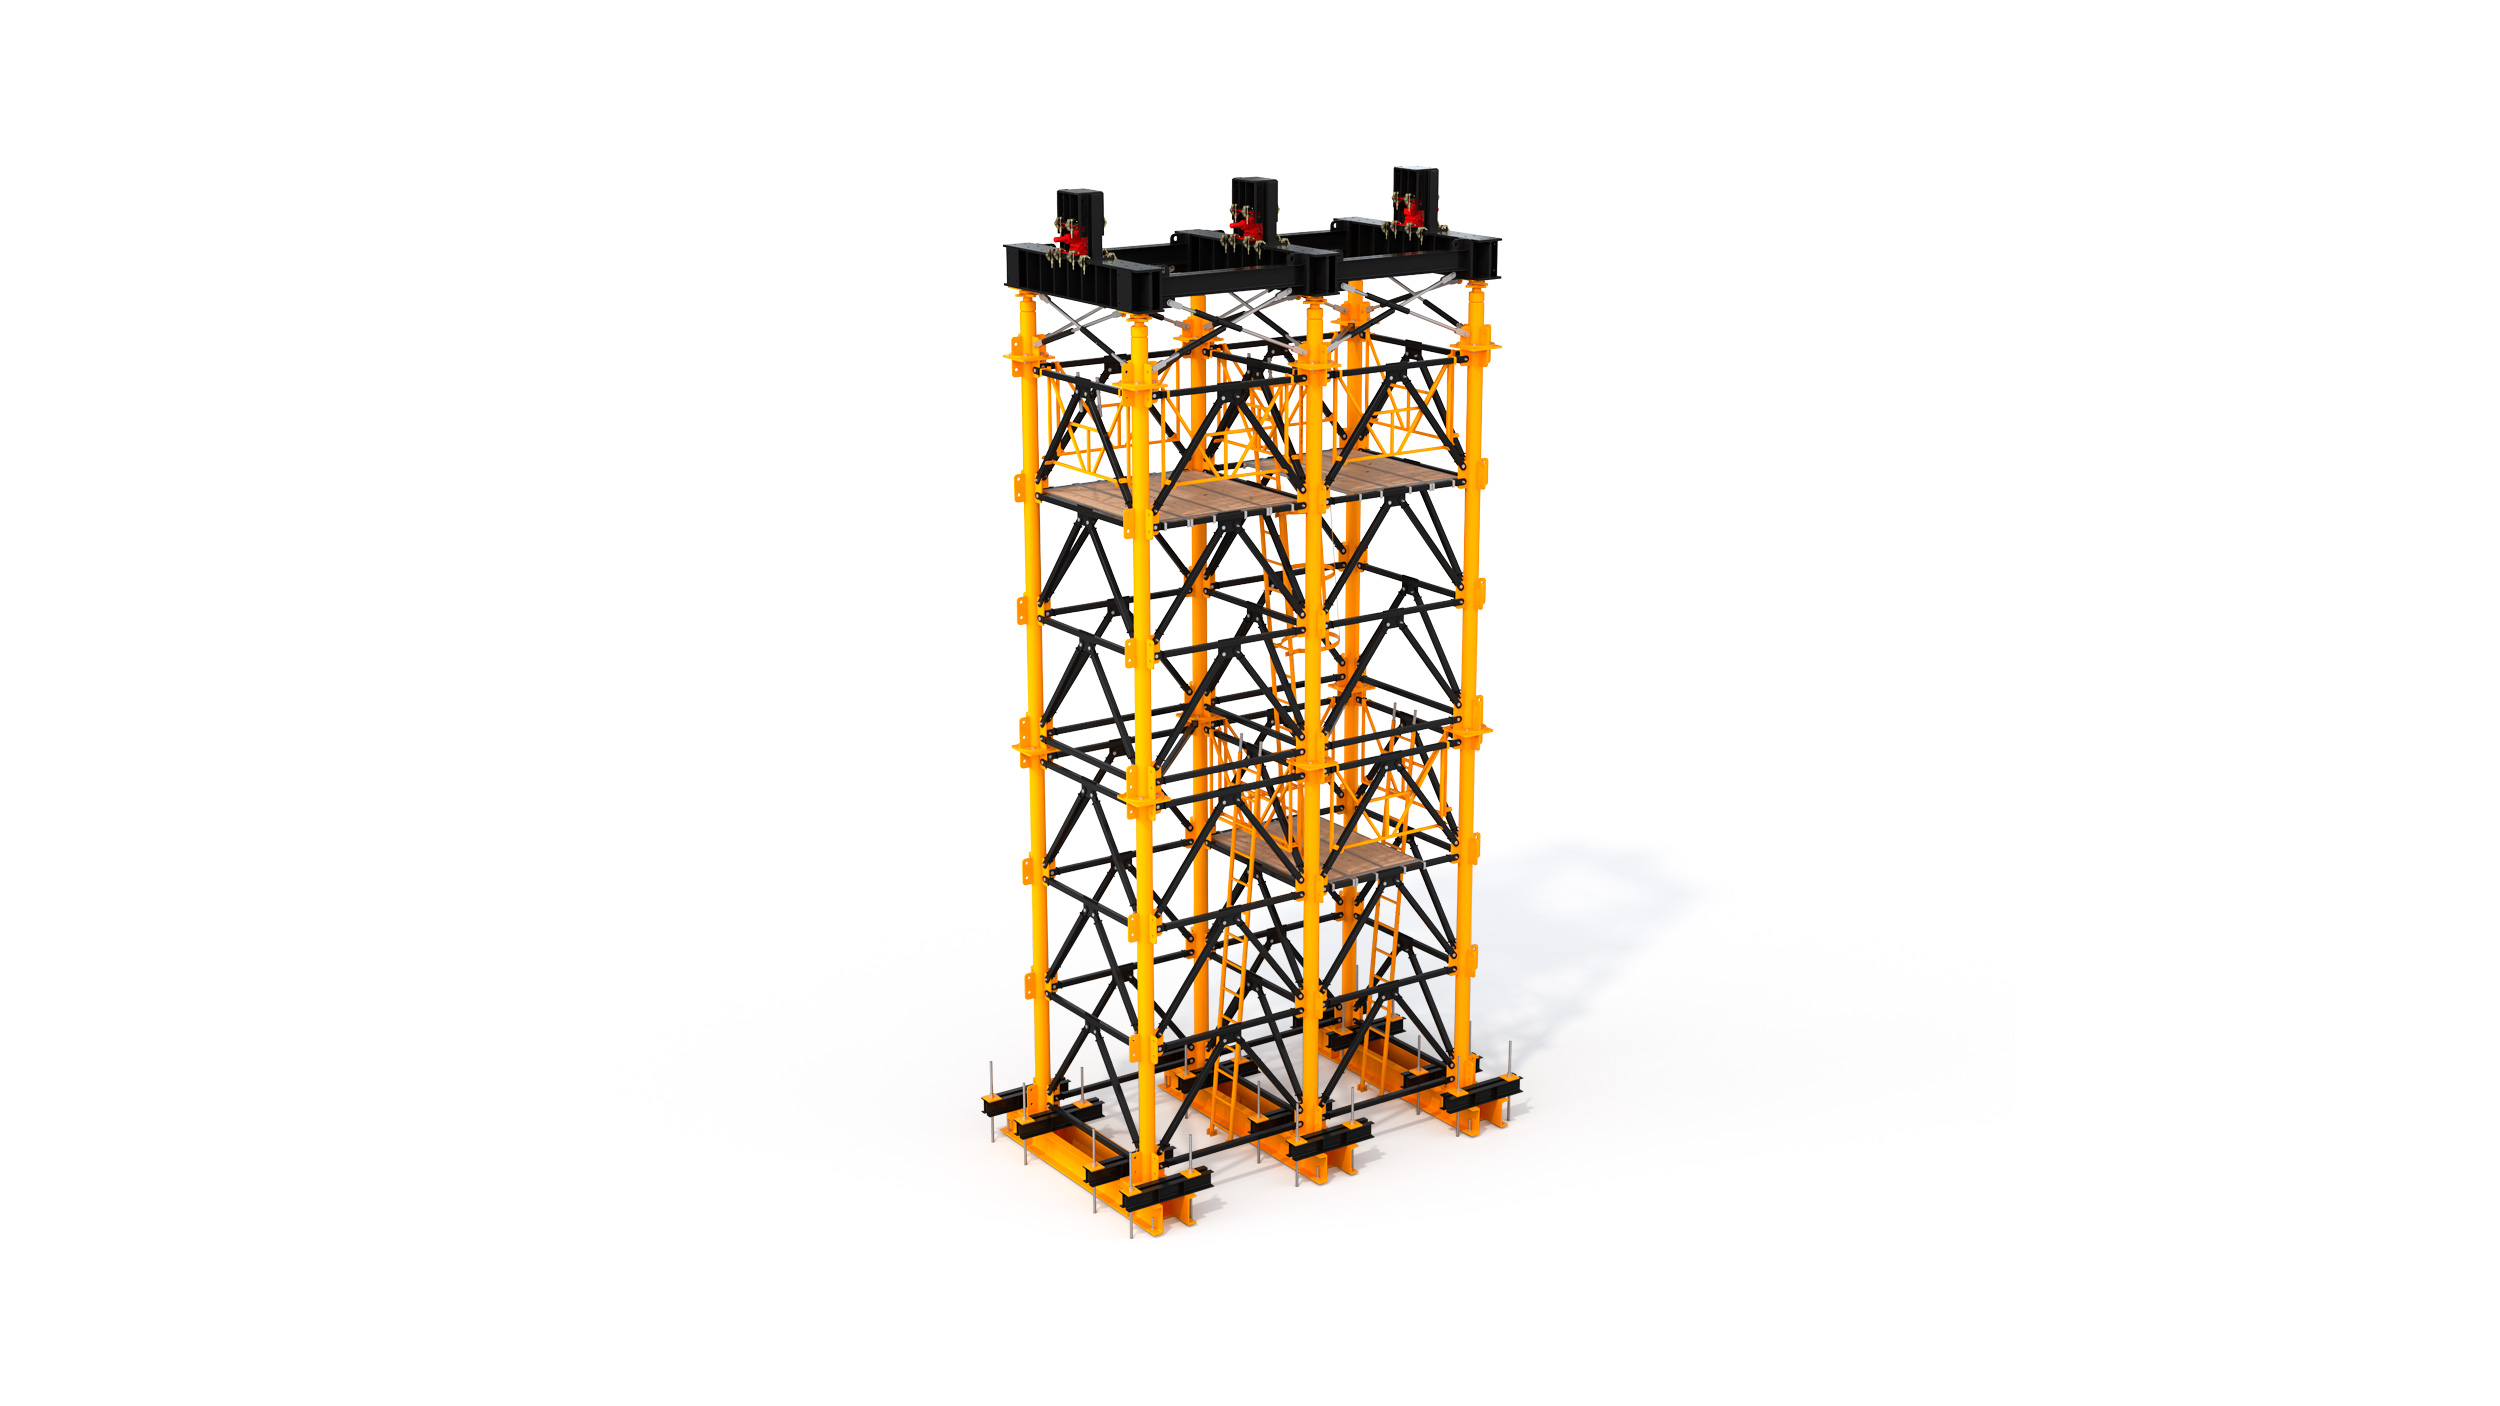 Torre de grande carga desenvolvido para a construção de pontes e viadutos de grande altura. Aspectos a destacar: sistema modular, facilidade de transporte e montagem rápida y segura em obra.